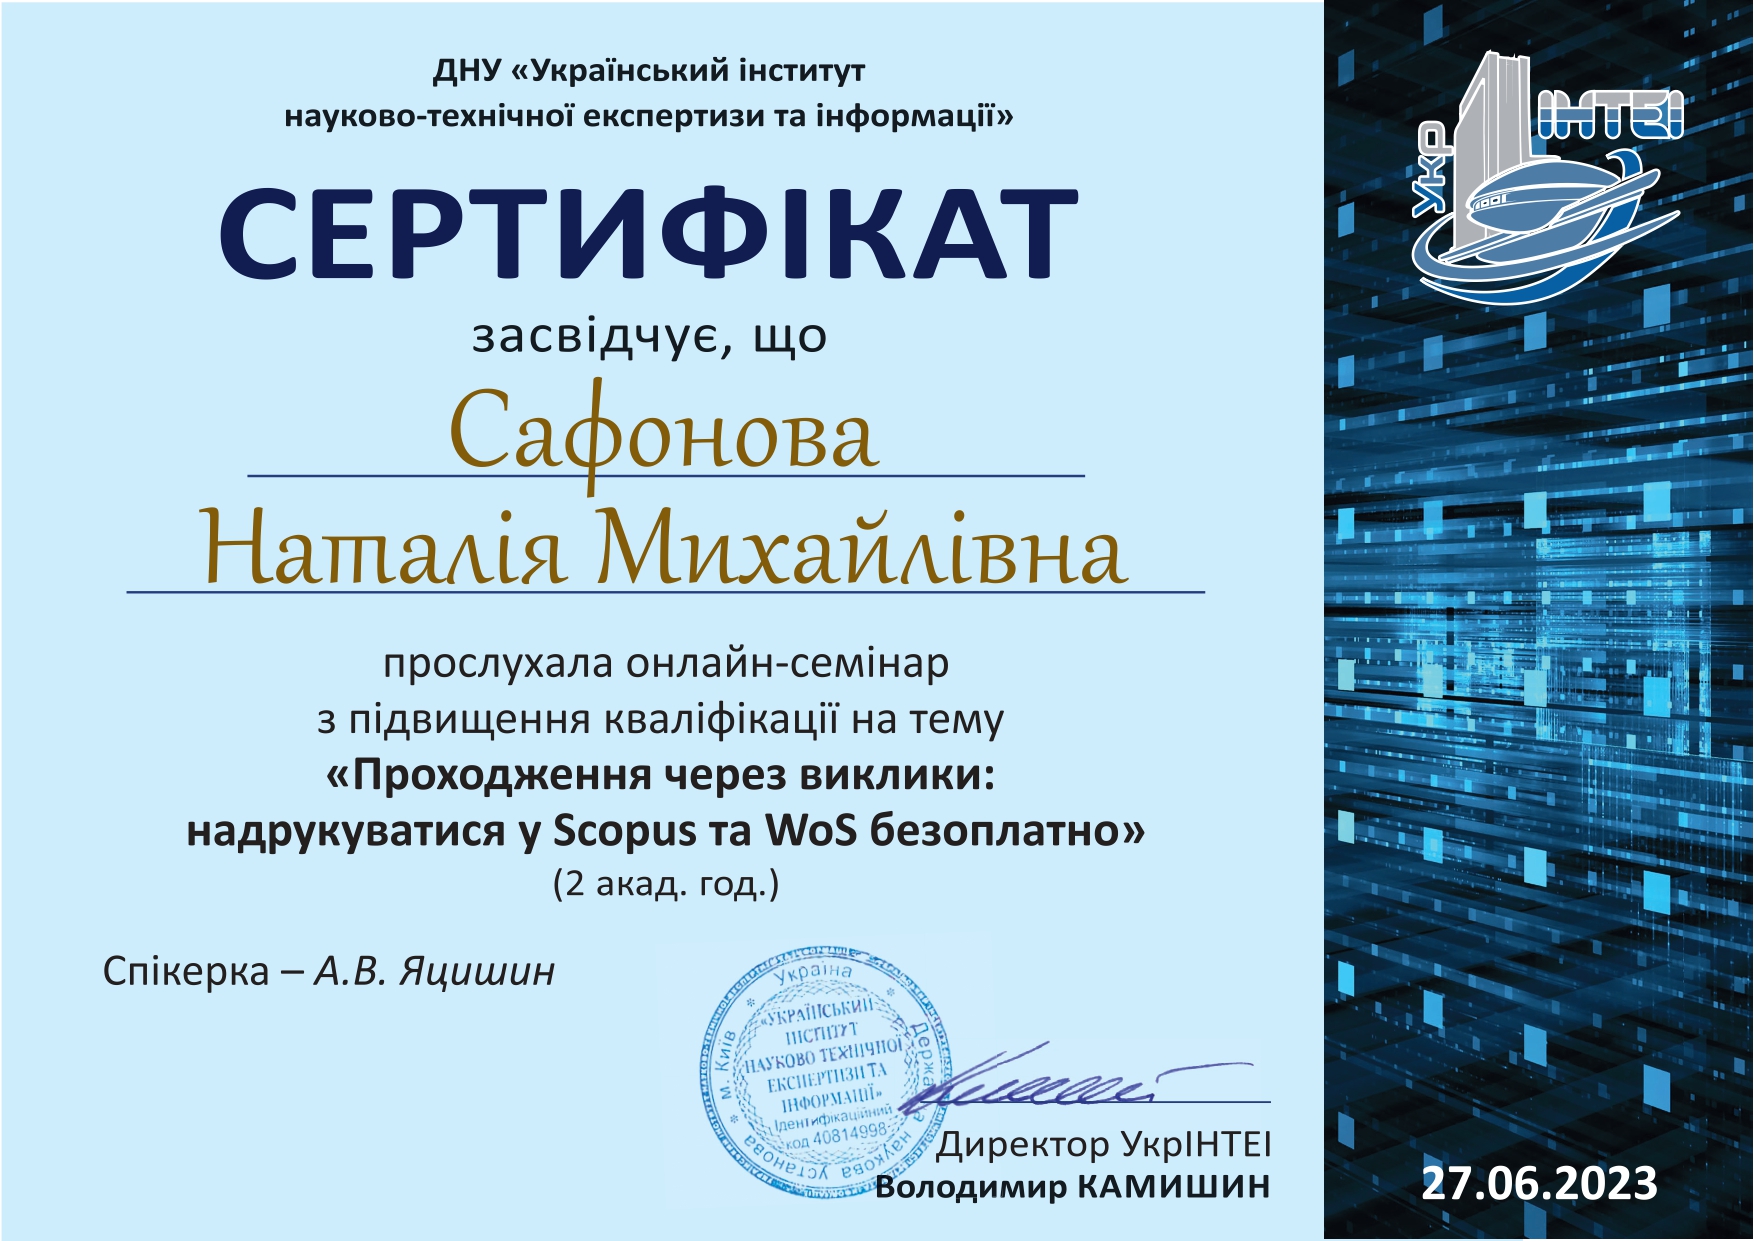 сертифікат червень 2023_page-0001.jpg